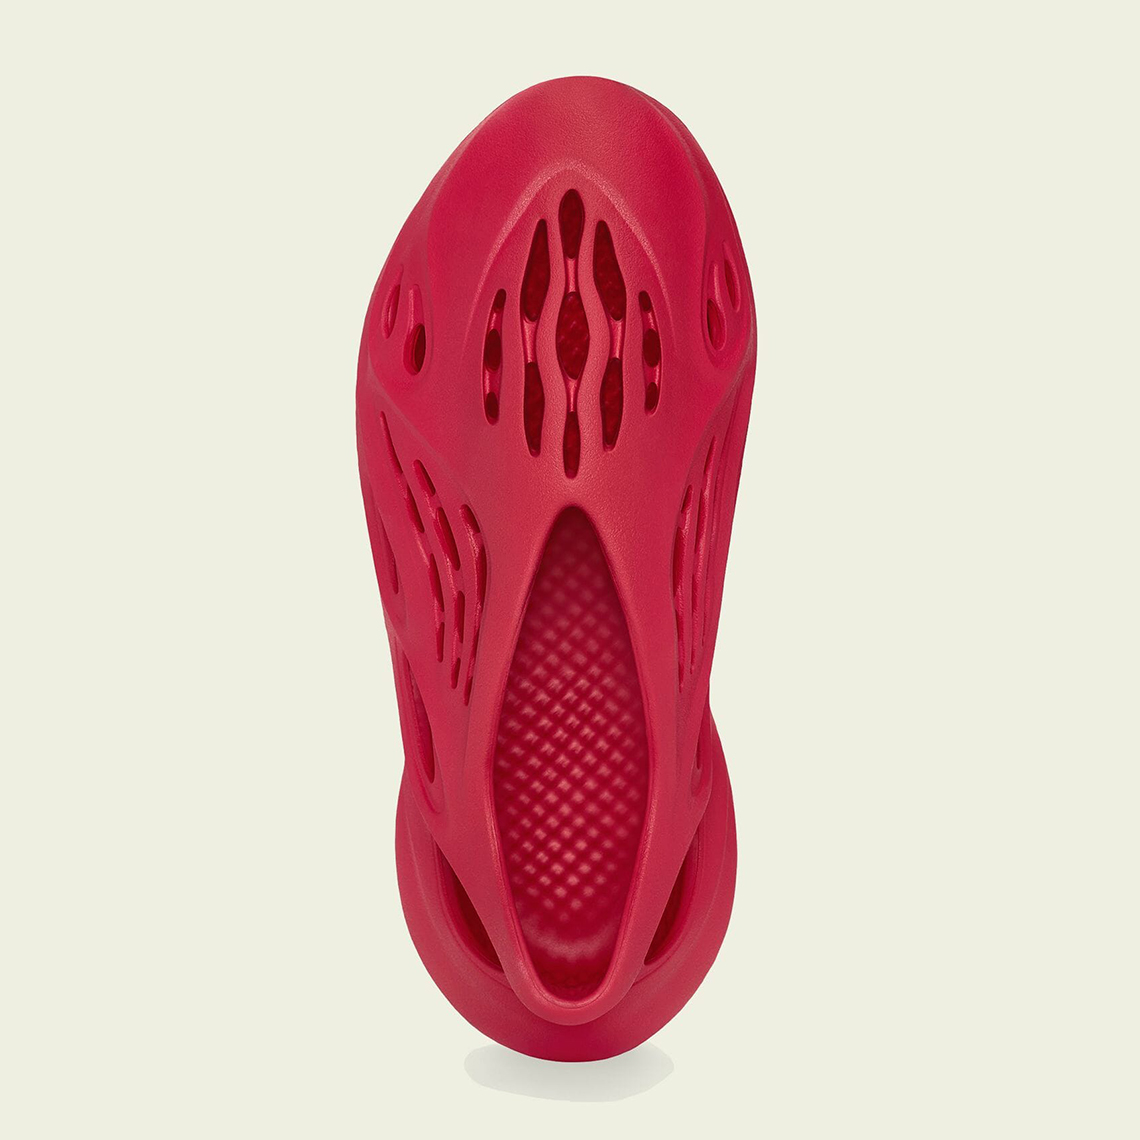 adidas Yeezy Foam Runner “Vermillion” 